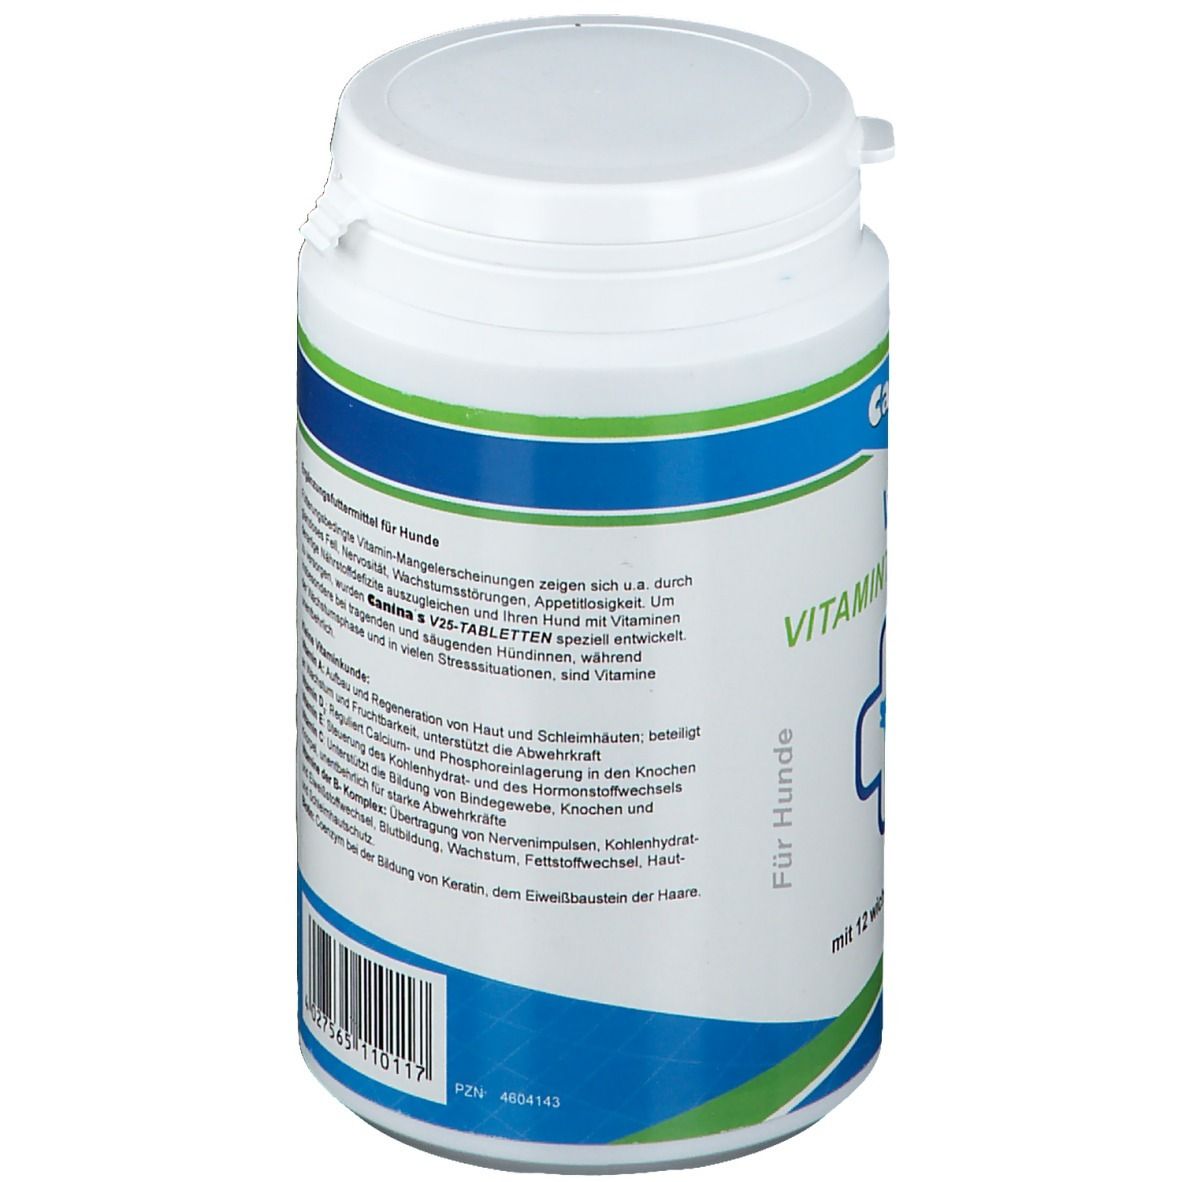 Canina® V25 Vitamintabletten